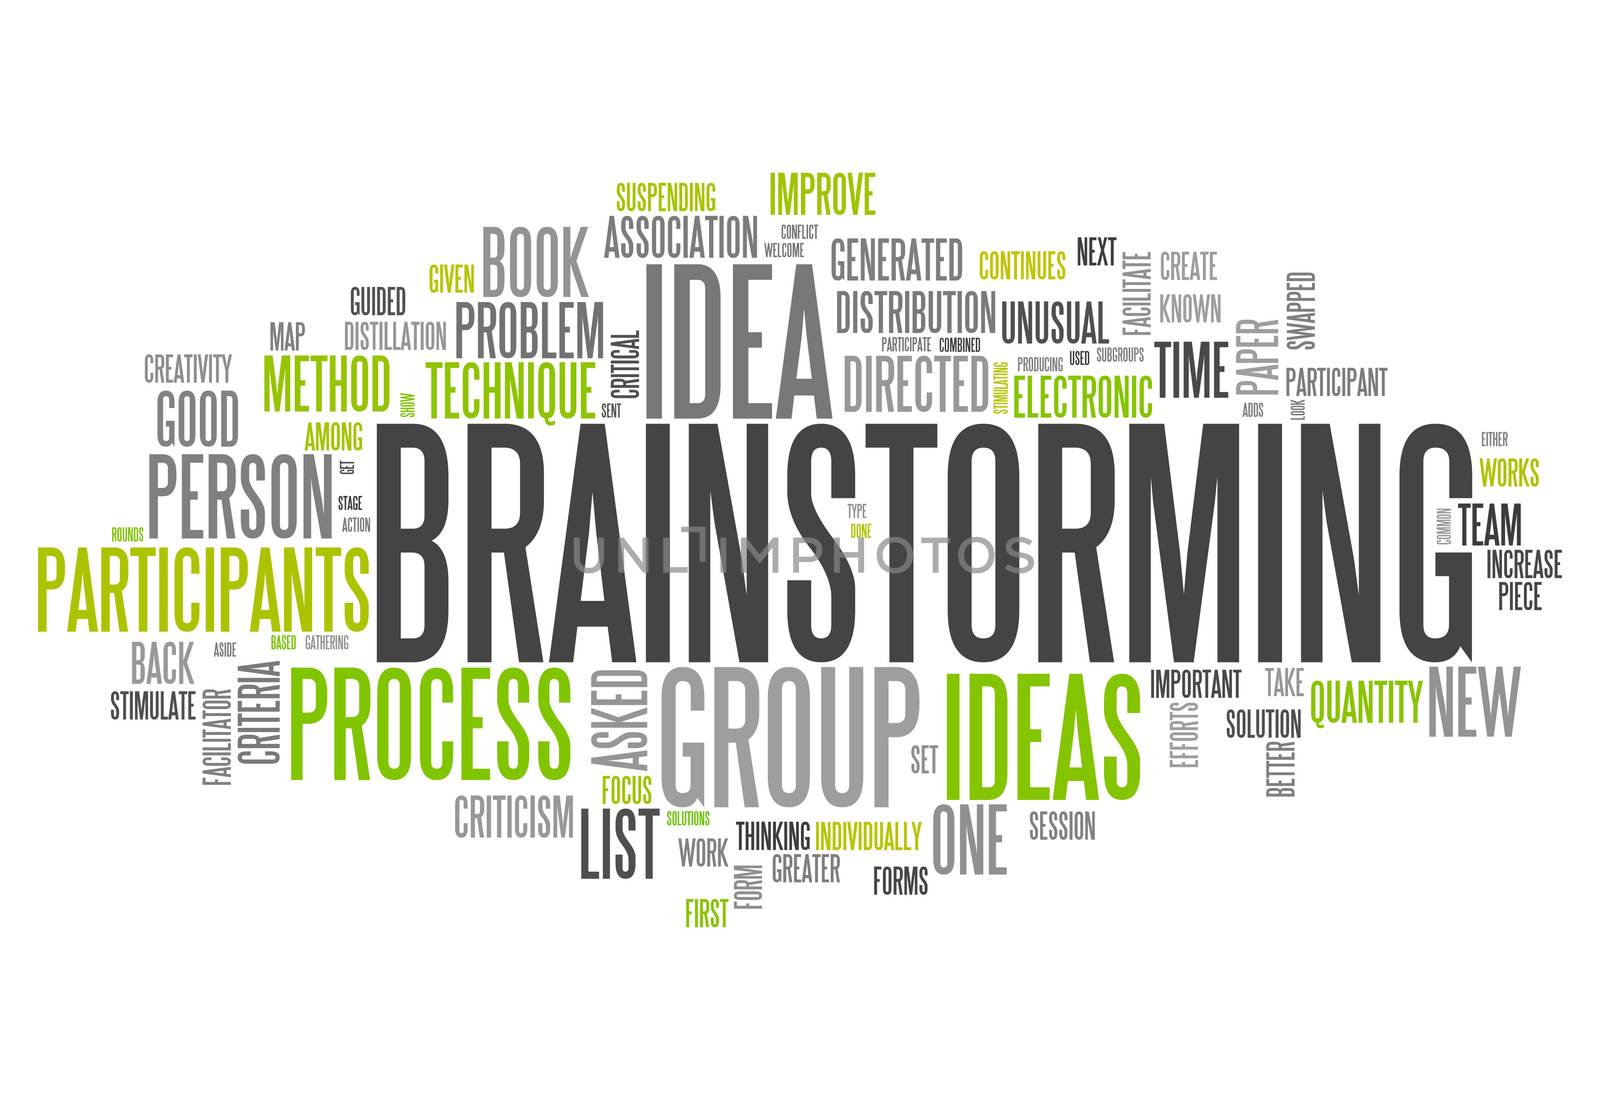 Word Cloud "Brainstorming" by mindscanner